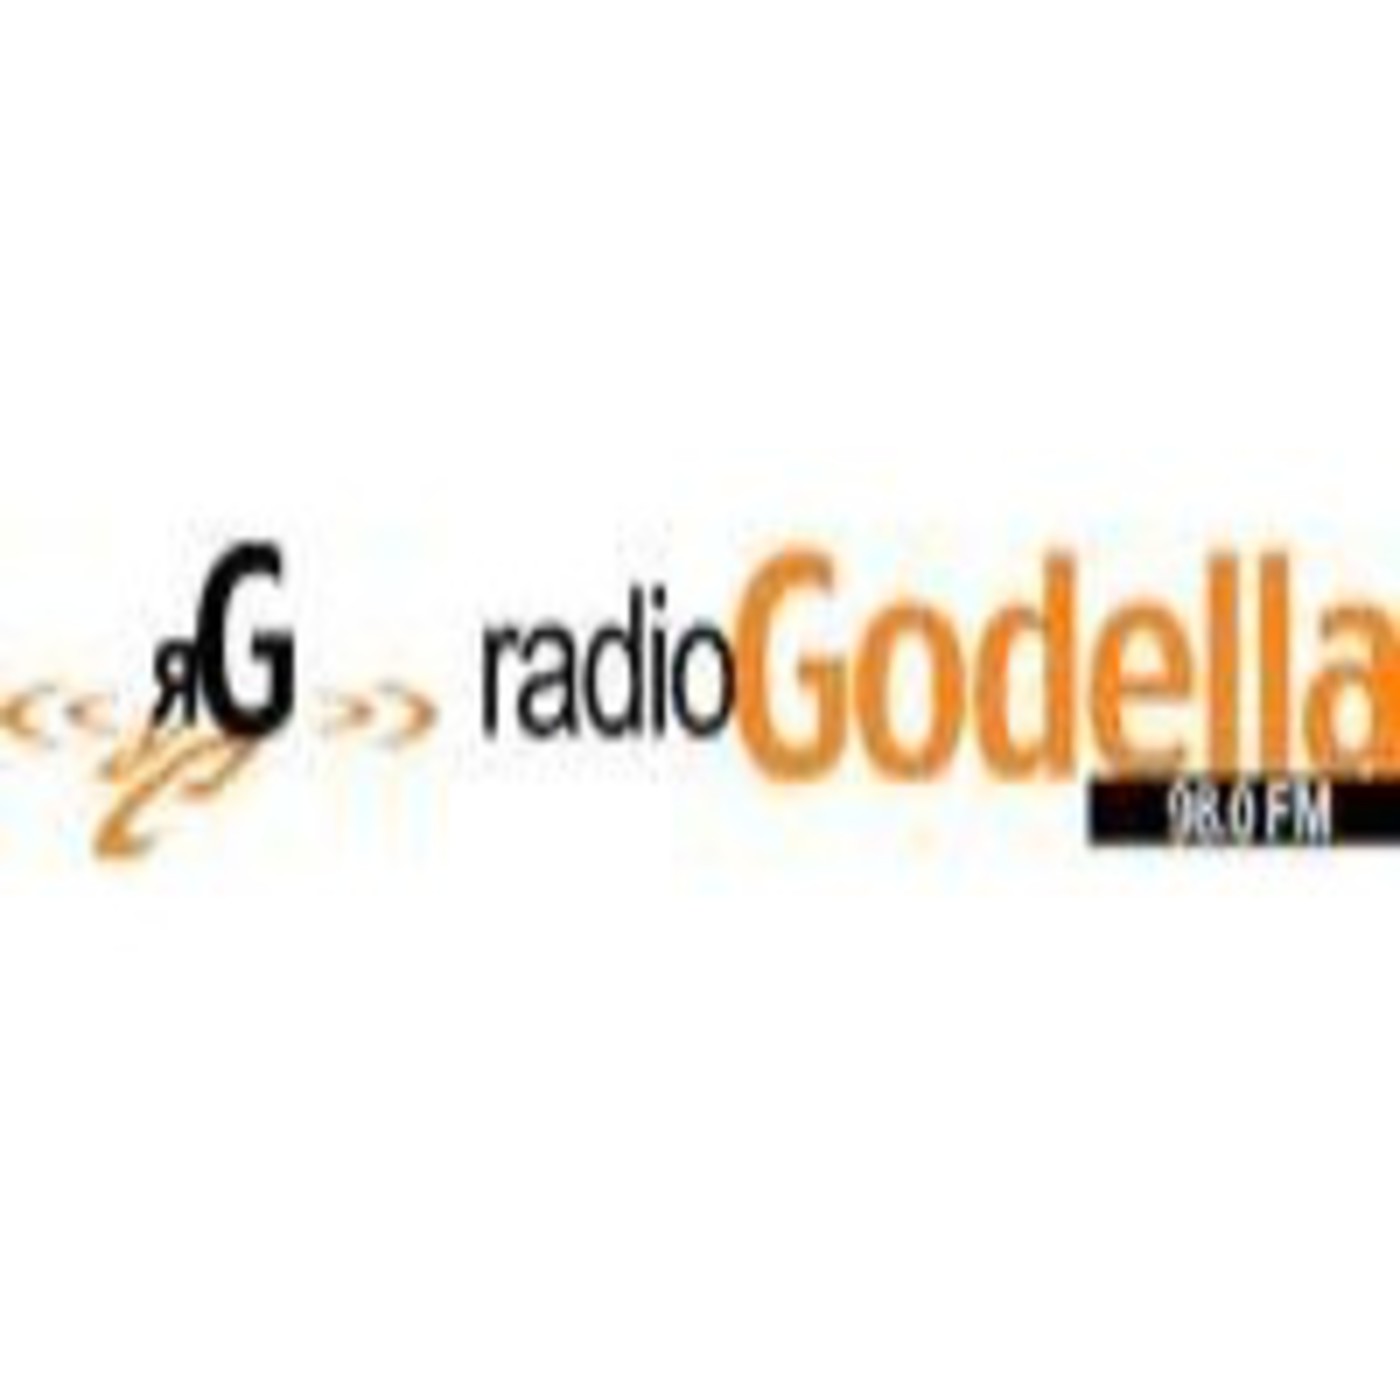 Podcast de "Music factory" a Radio Godella.